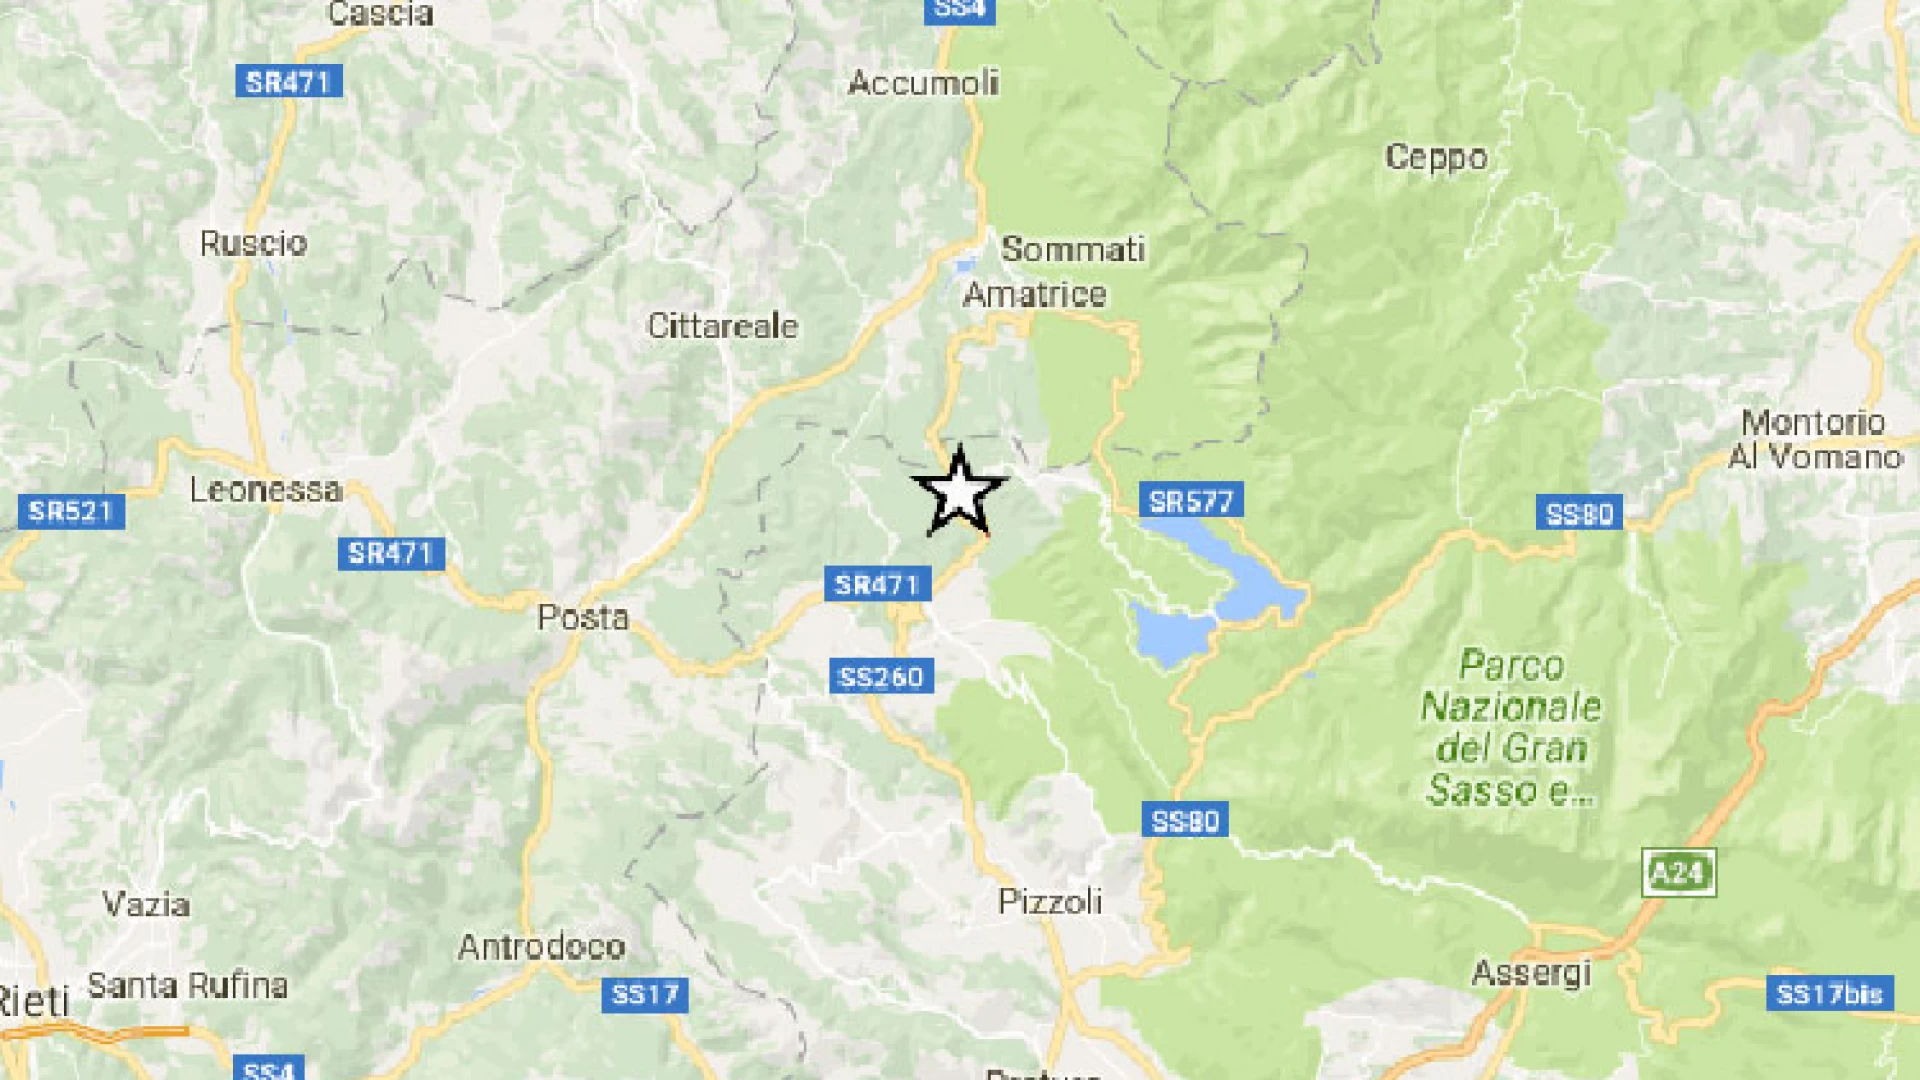 Sisma: trema ancora il Centro Italia. Scossa  di magnitudo 5.3 tra Abruzzo, Lazio e Marche, Il sisma avvertito lievemente anche ad Isernia e provincia.